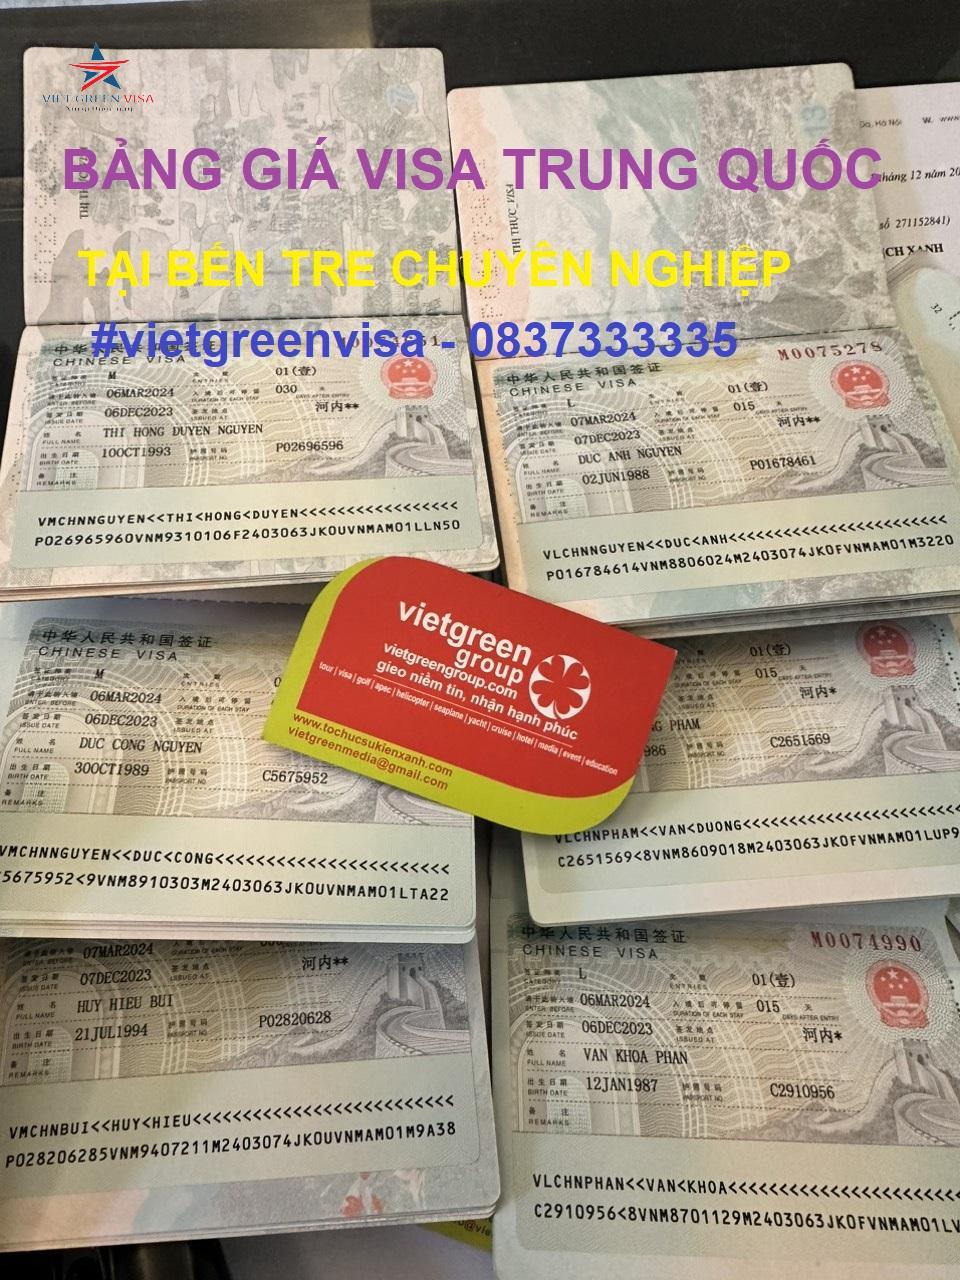 Dịch vụ xin visa Trung Quốc tại Bến Tre chuyên nghiệp